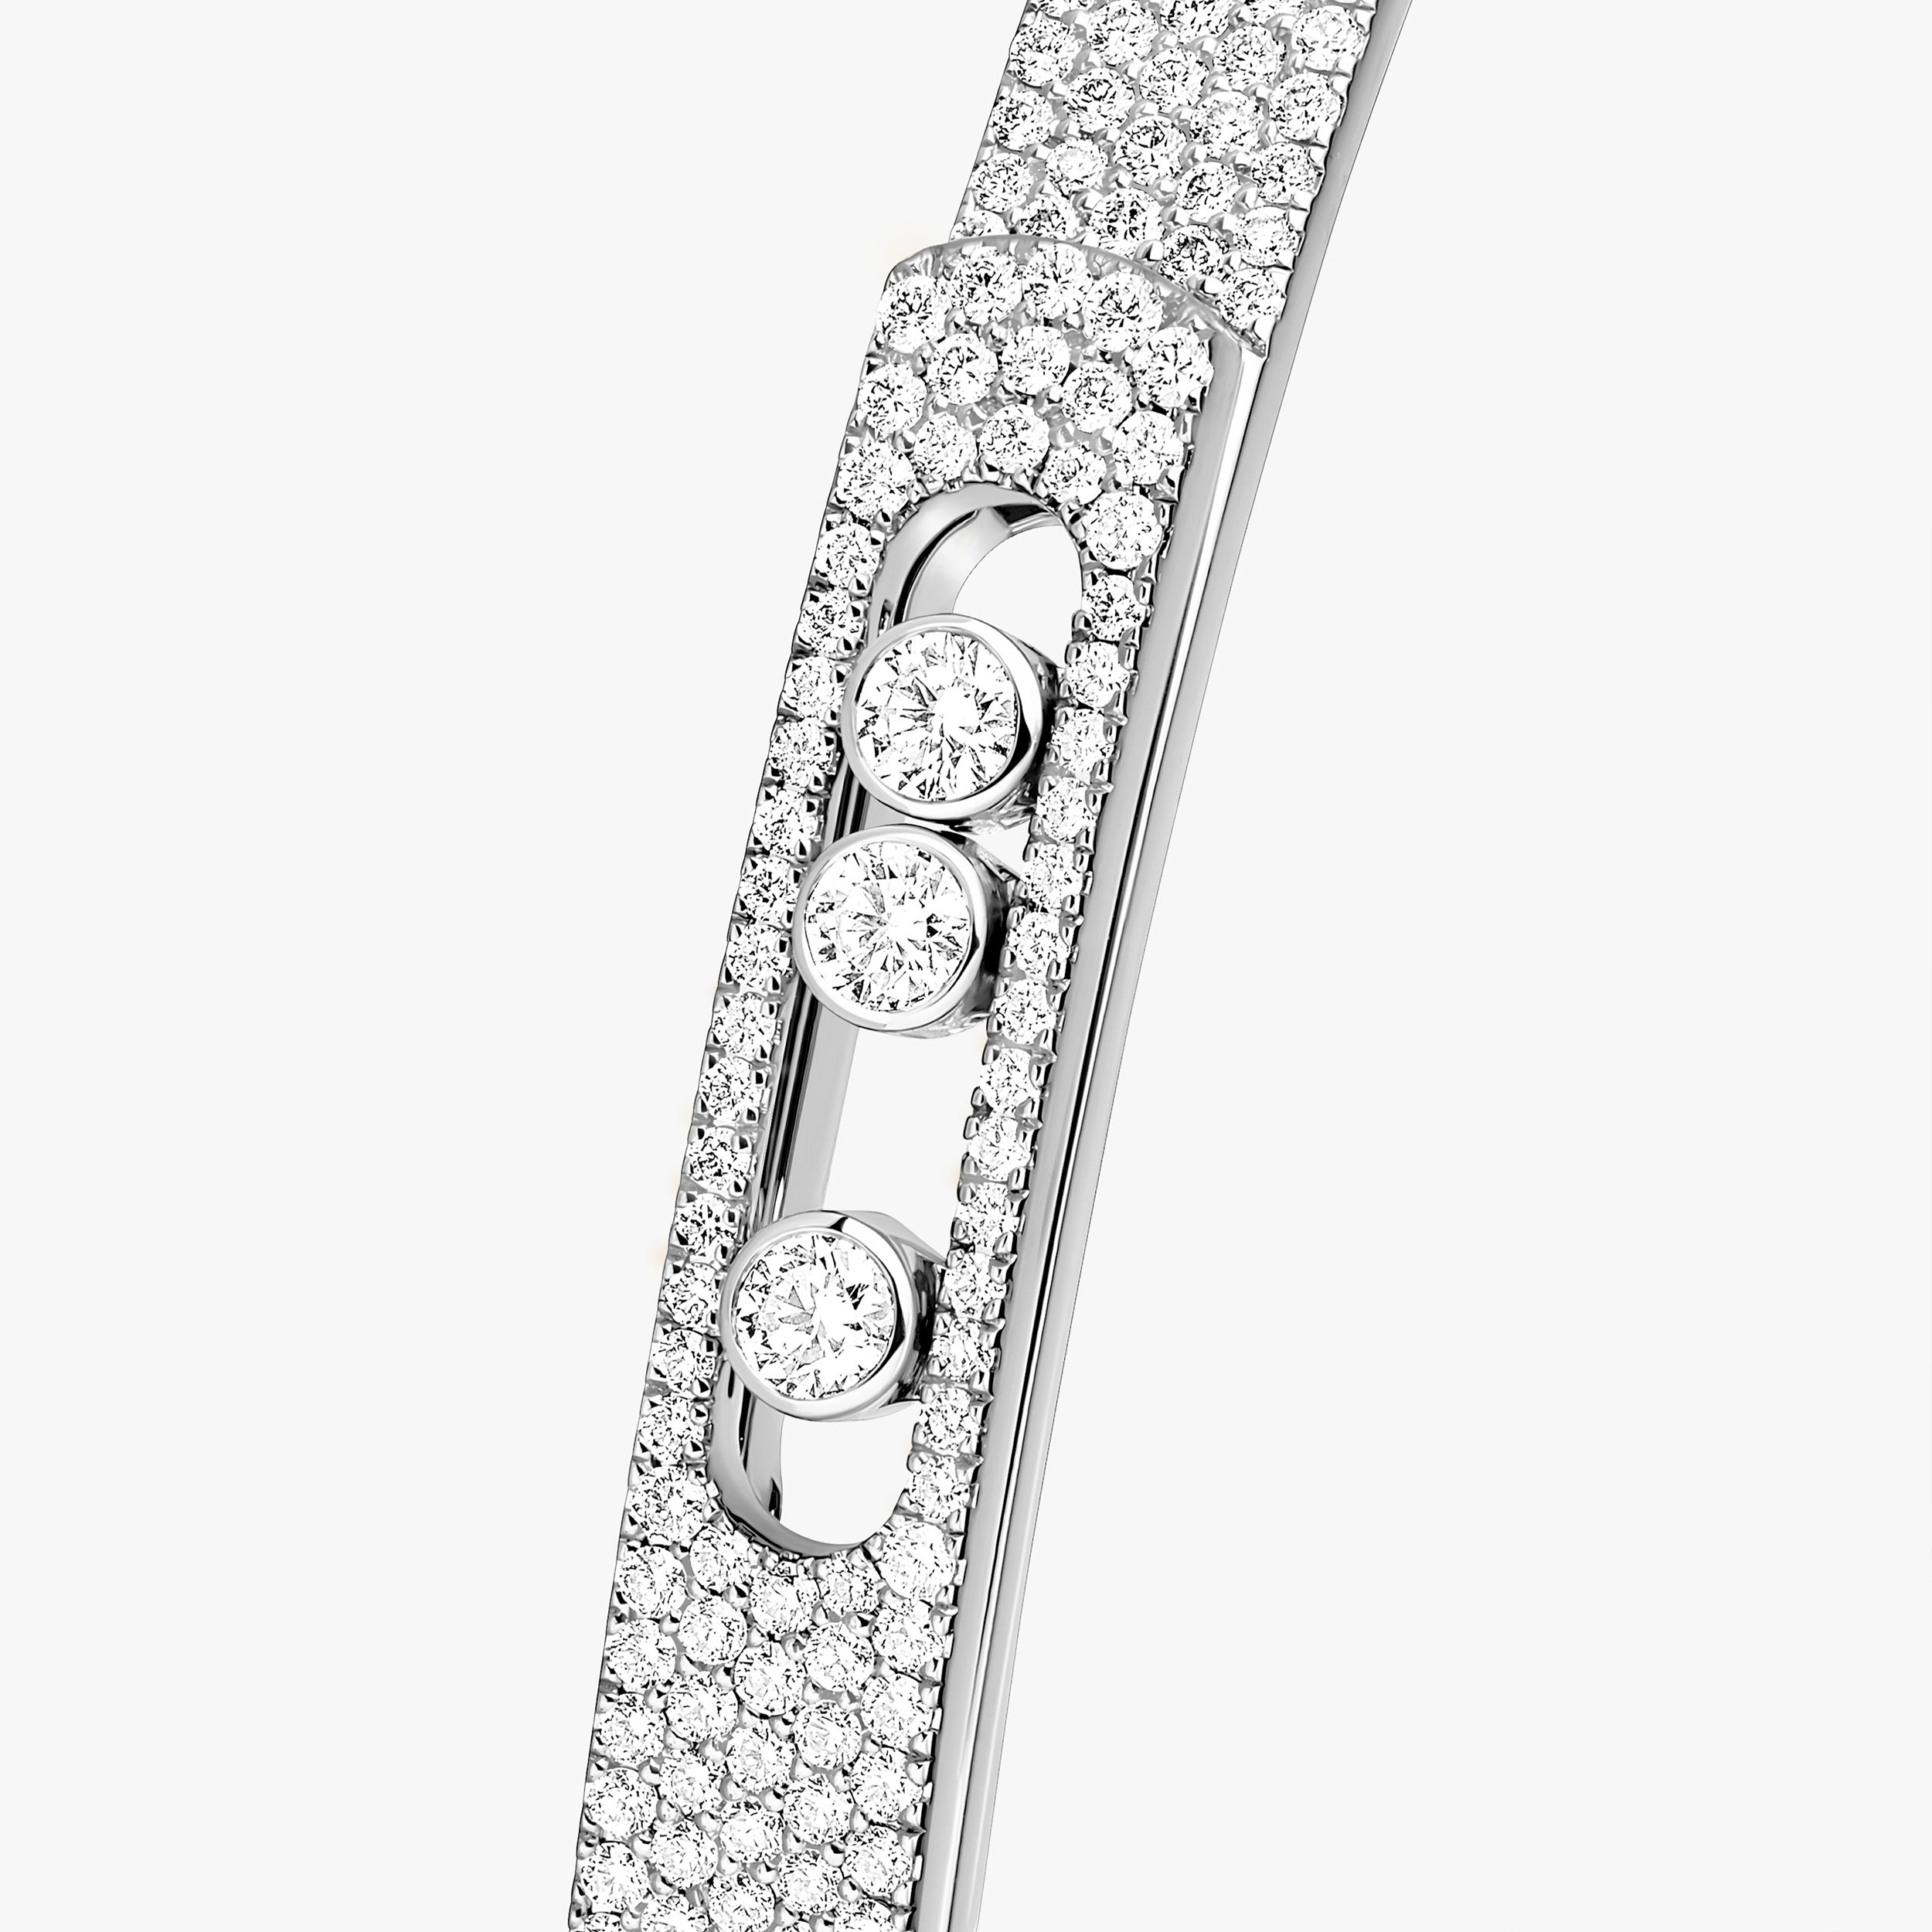 Move Noa PM Full Pavé Bangle White Gold For Her Diamond Bracelet 12721-WG